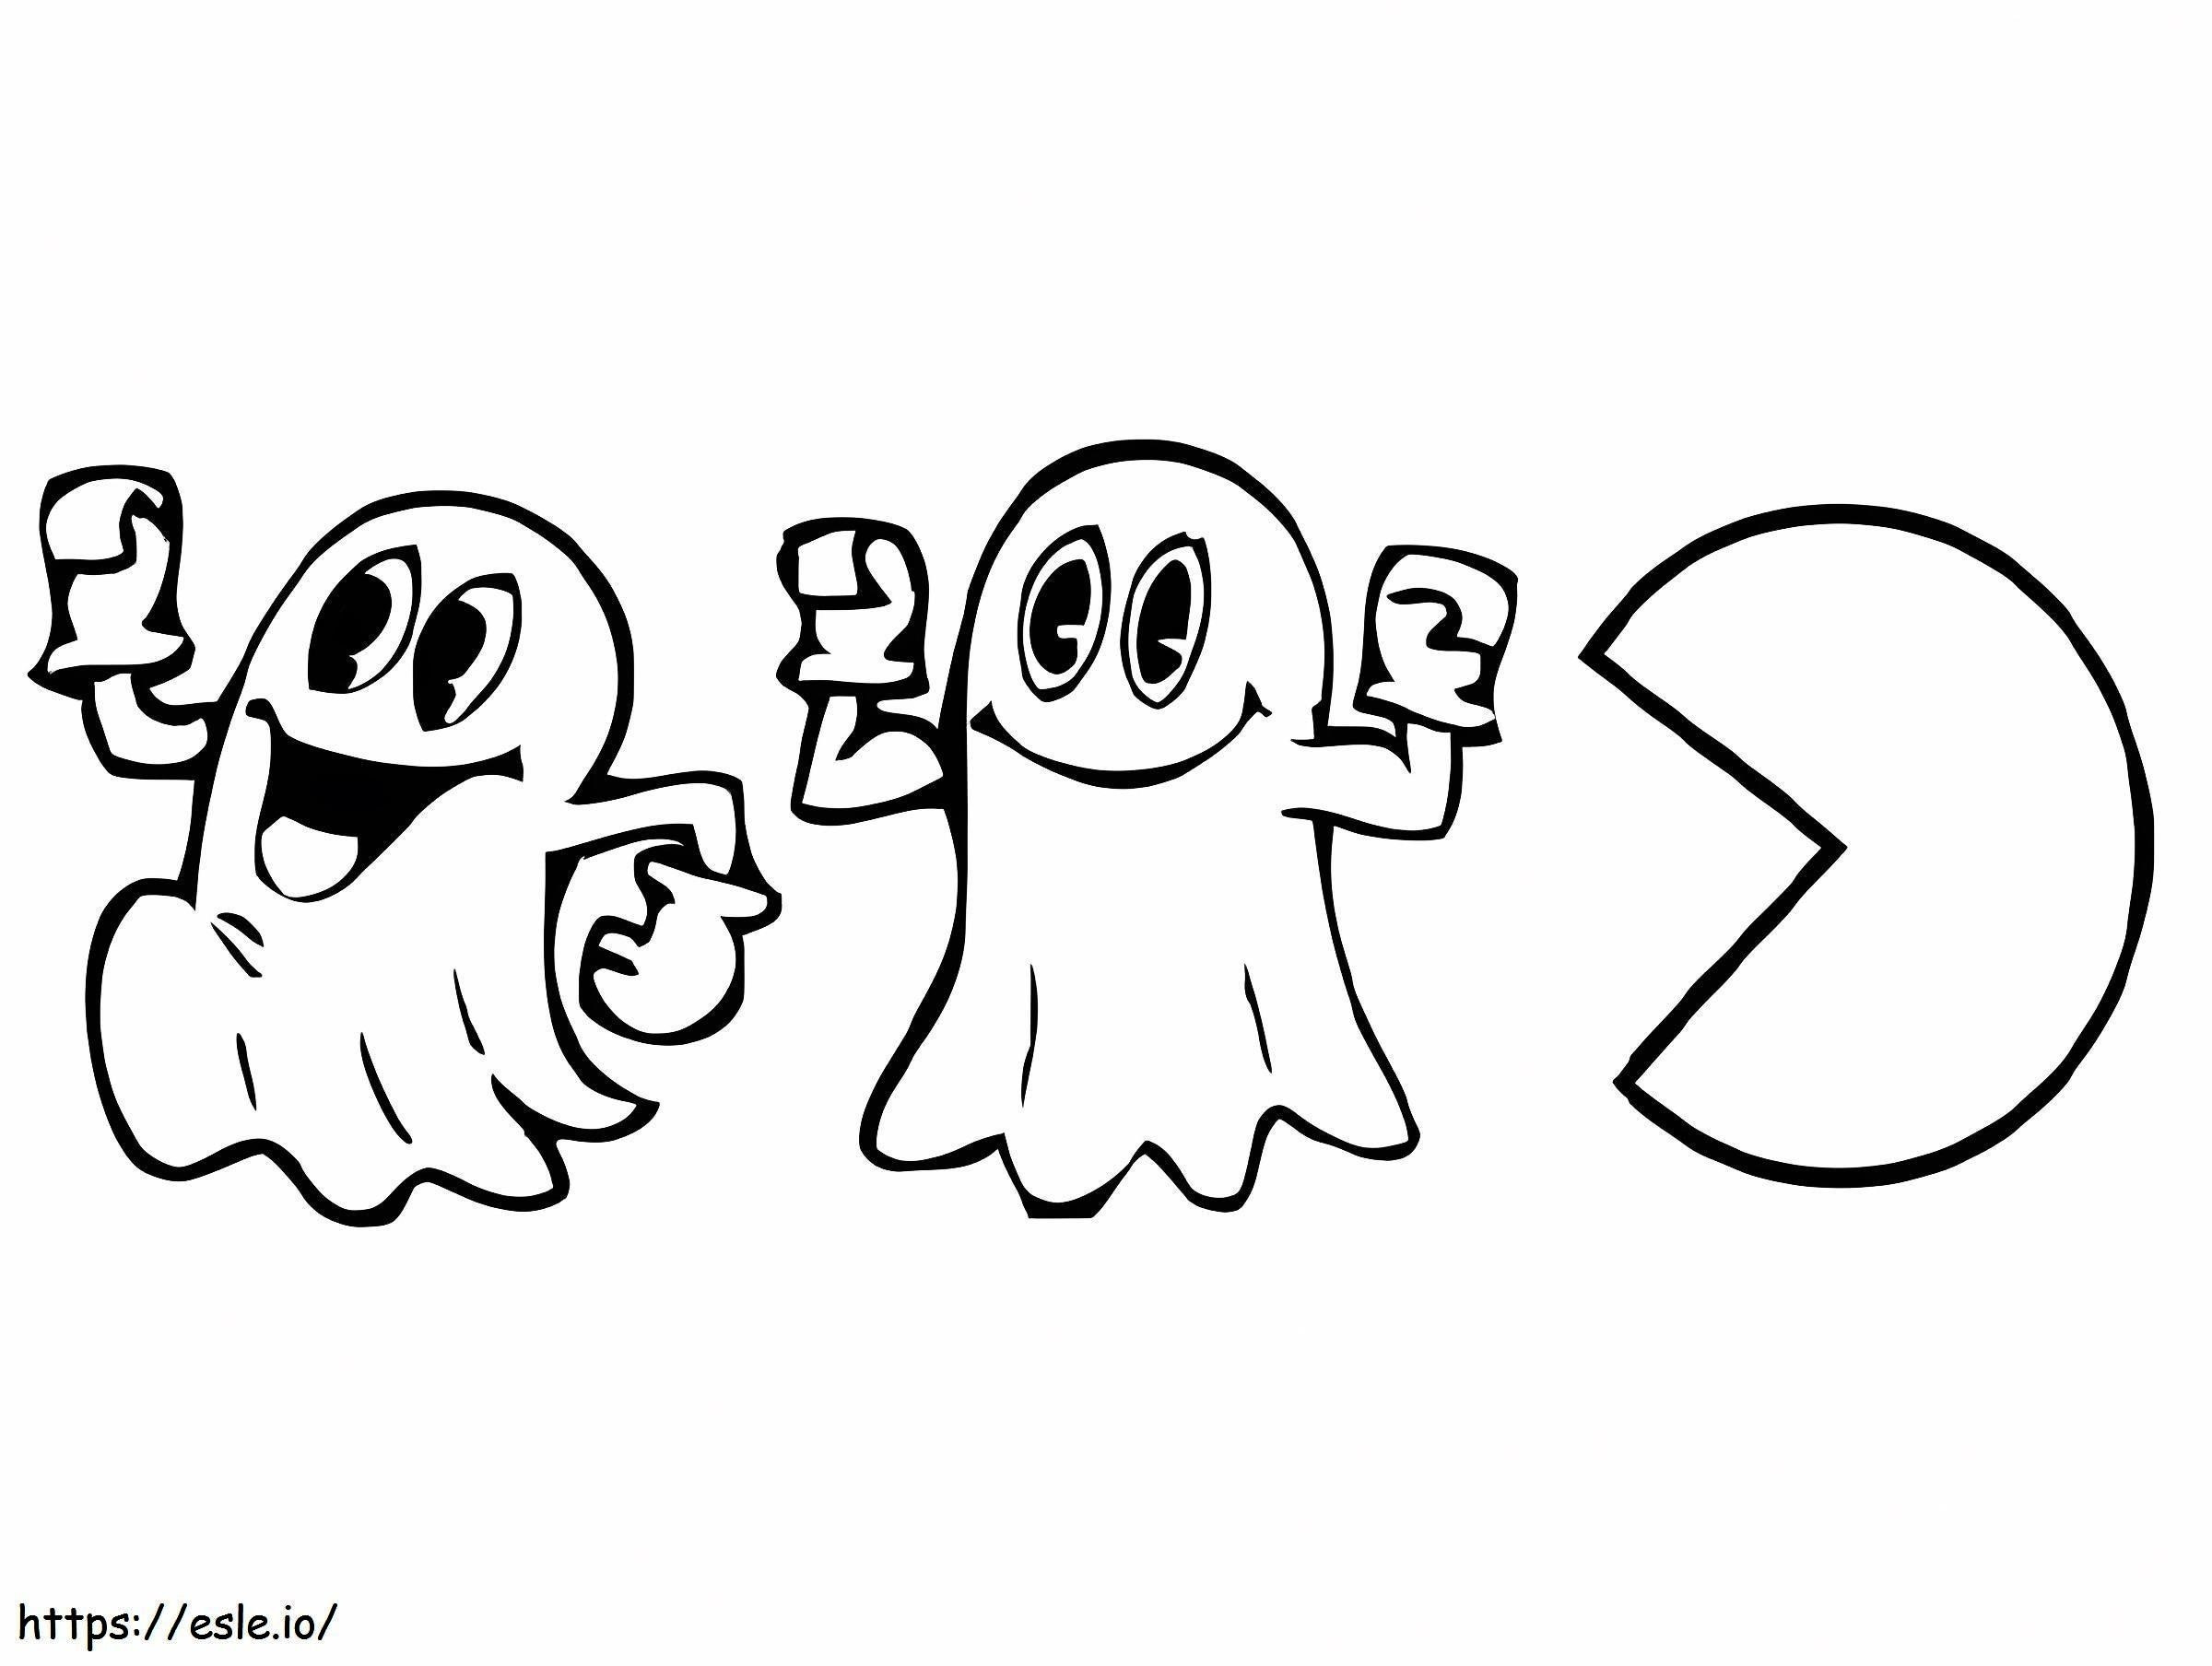 Pacman eet twee geesten kleurplaat kleurplaat